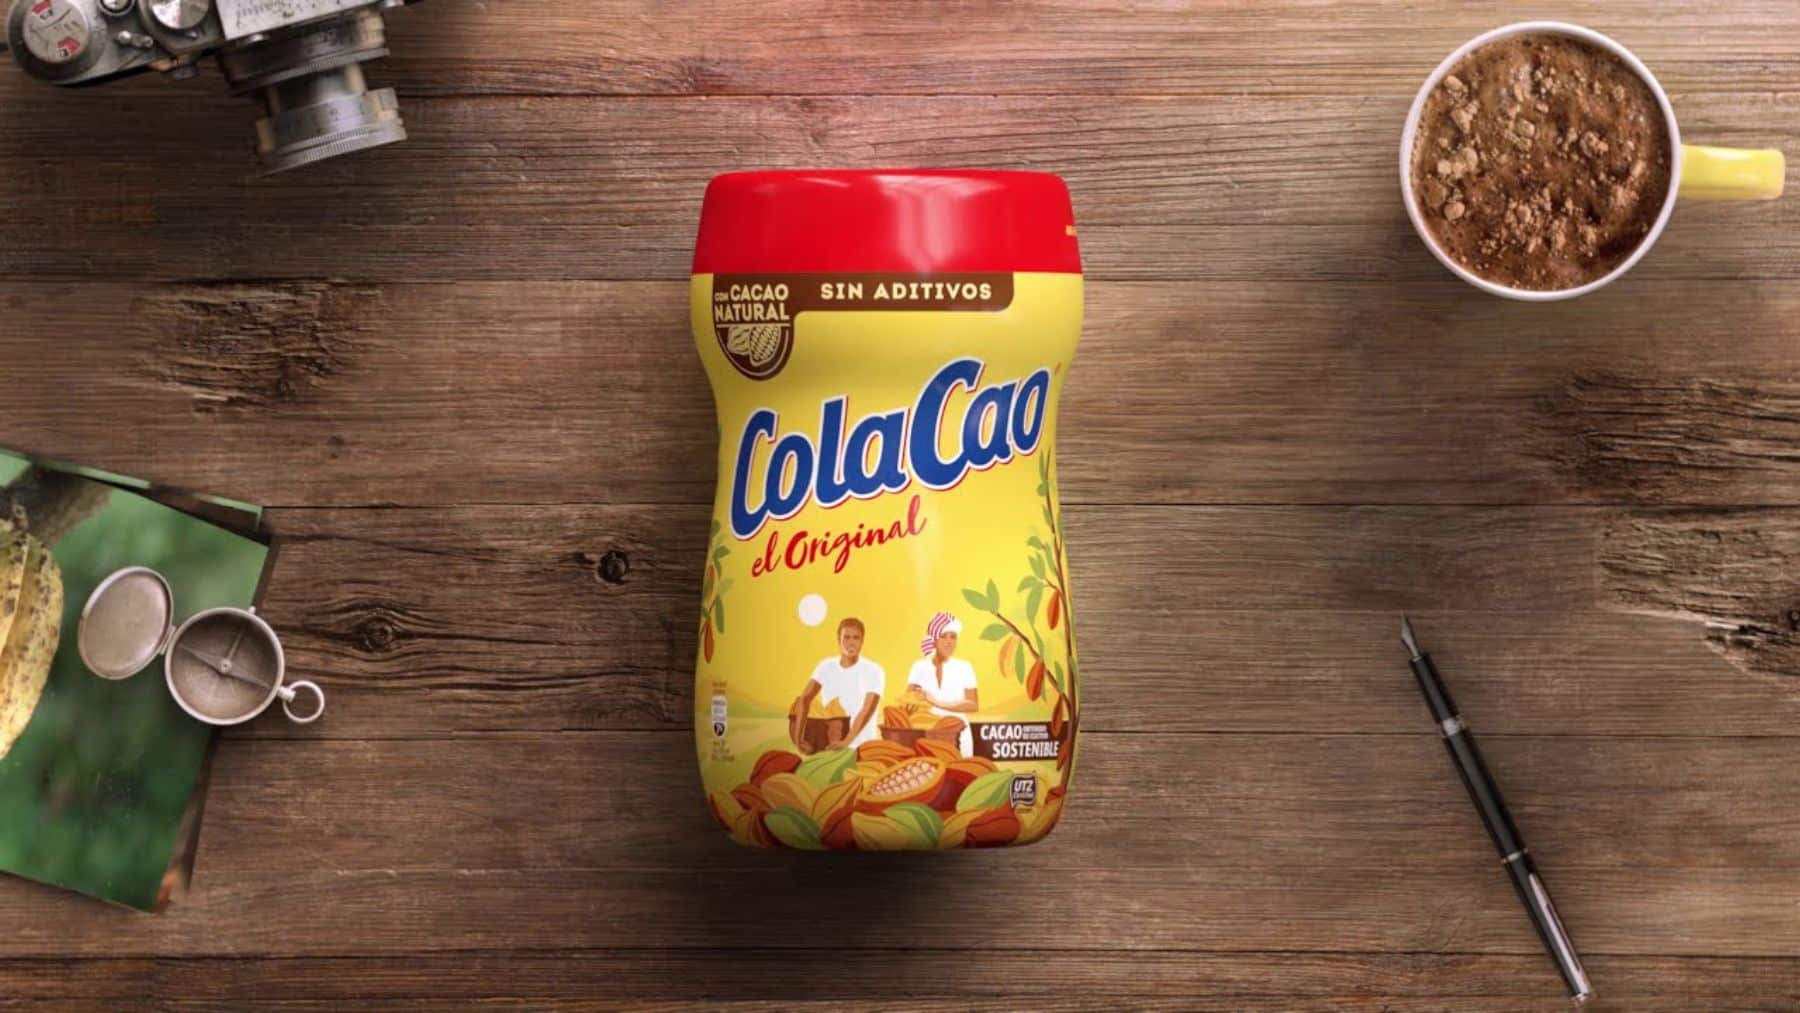 Cola Cao - el Original, 760 g